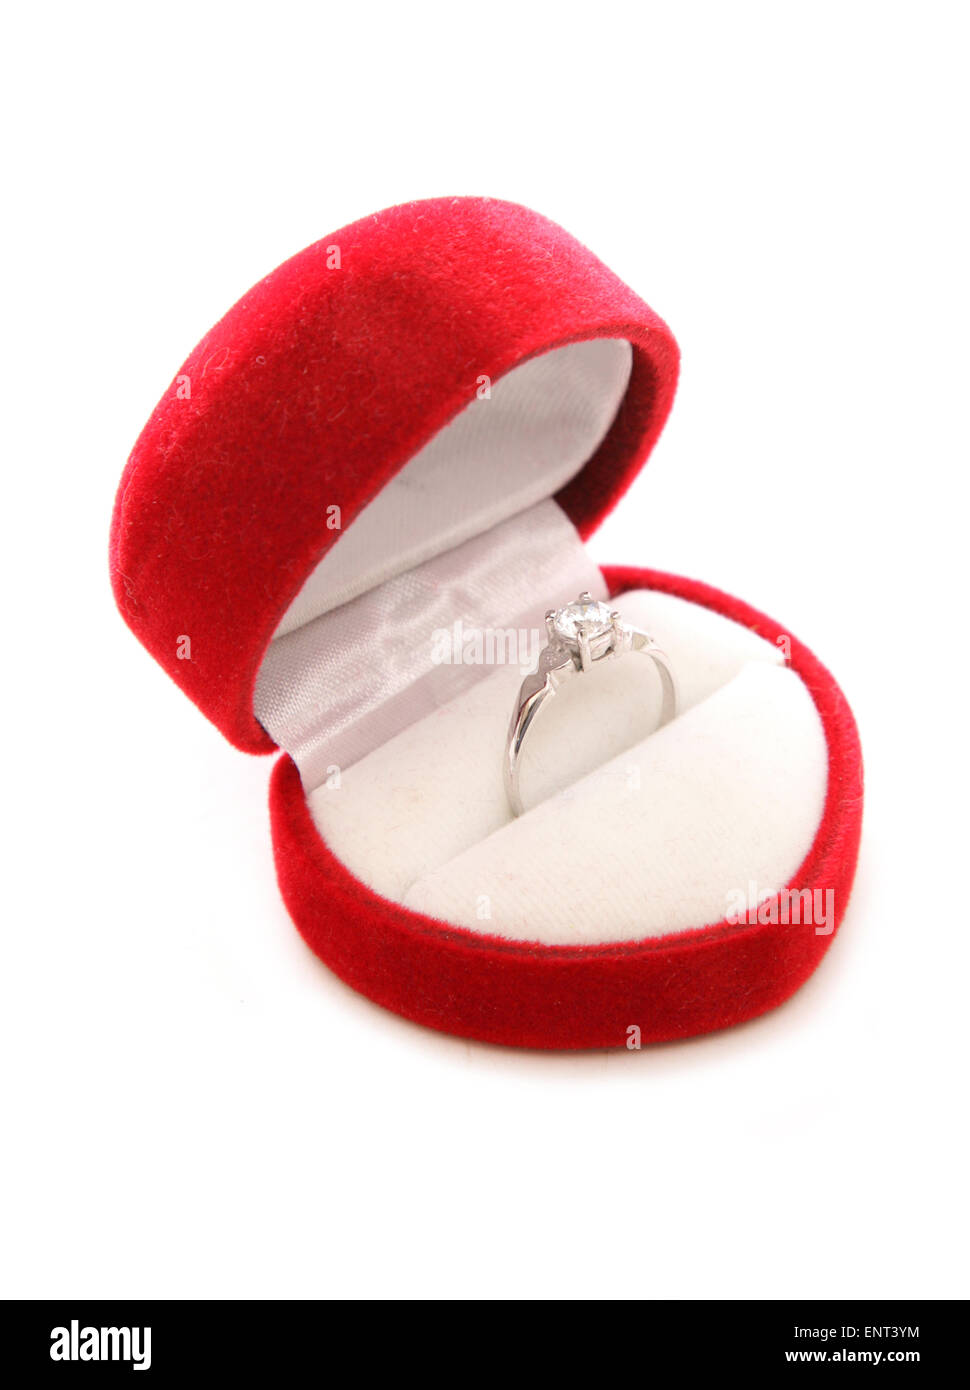 Diamond Engagement Ring en el recorte de la caja del corazón Foto de stock